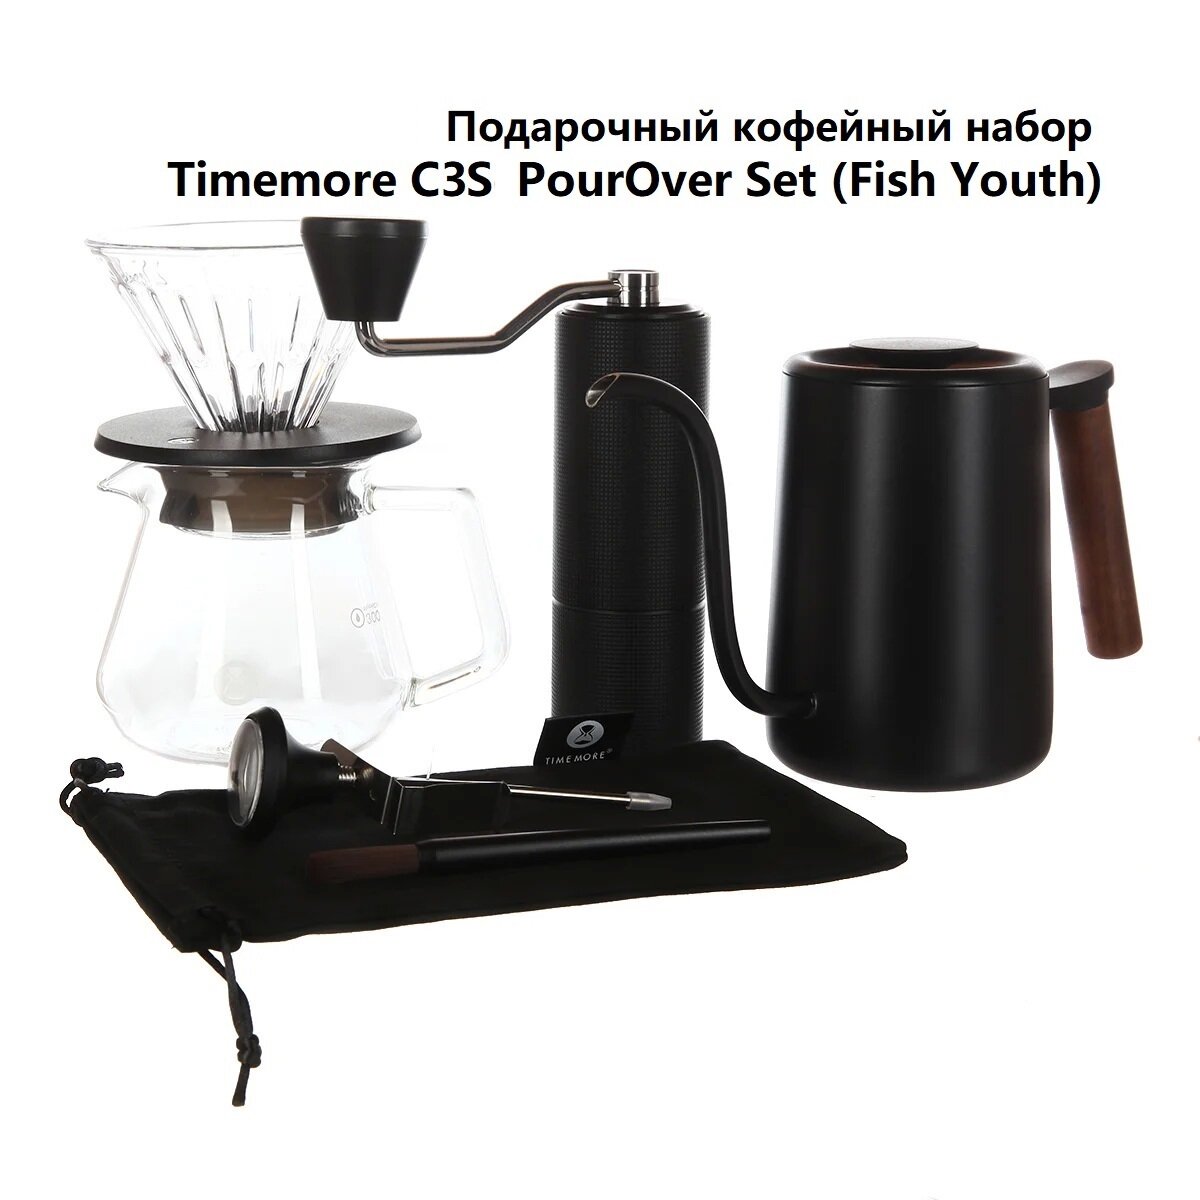 Кофейный набор Timemore C3S PourOver Set (Fish Youth), чёрный